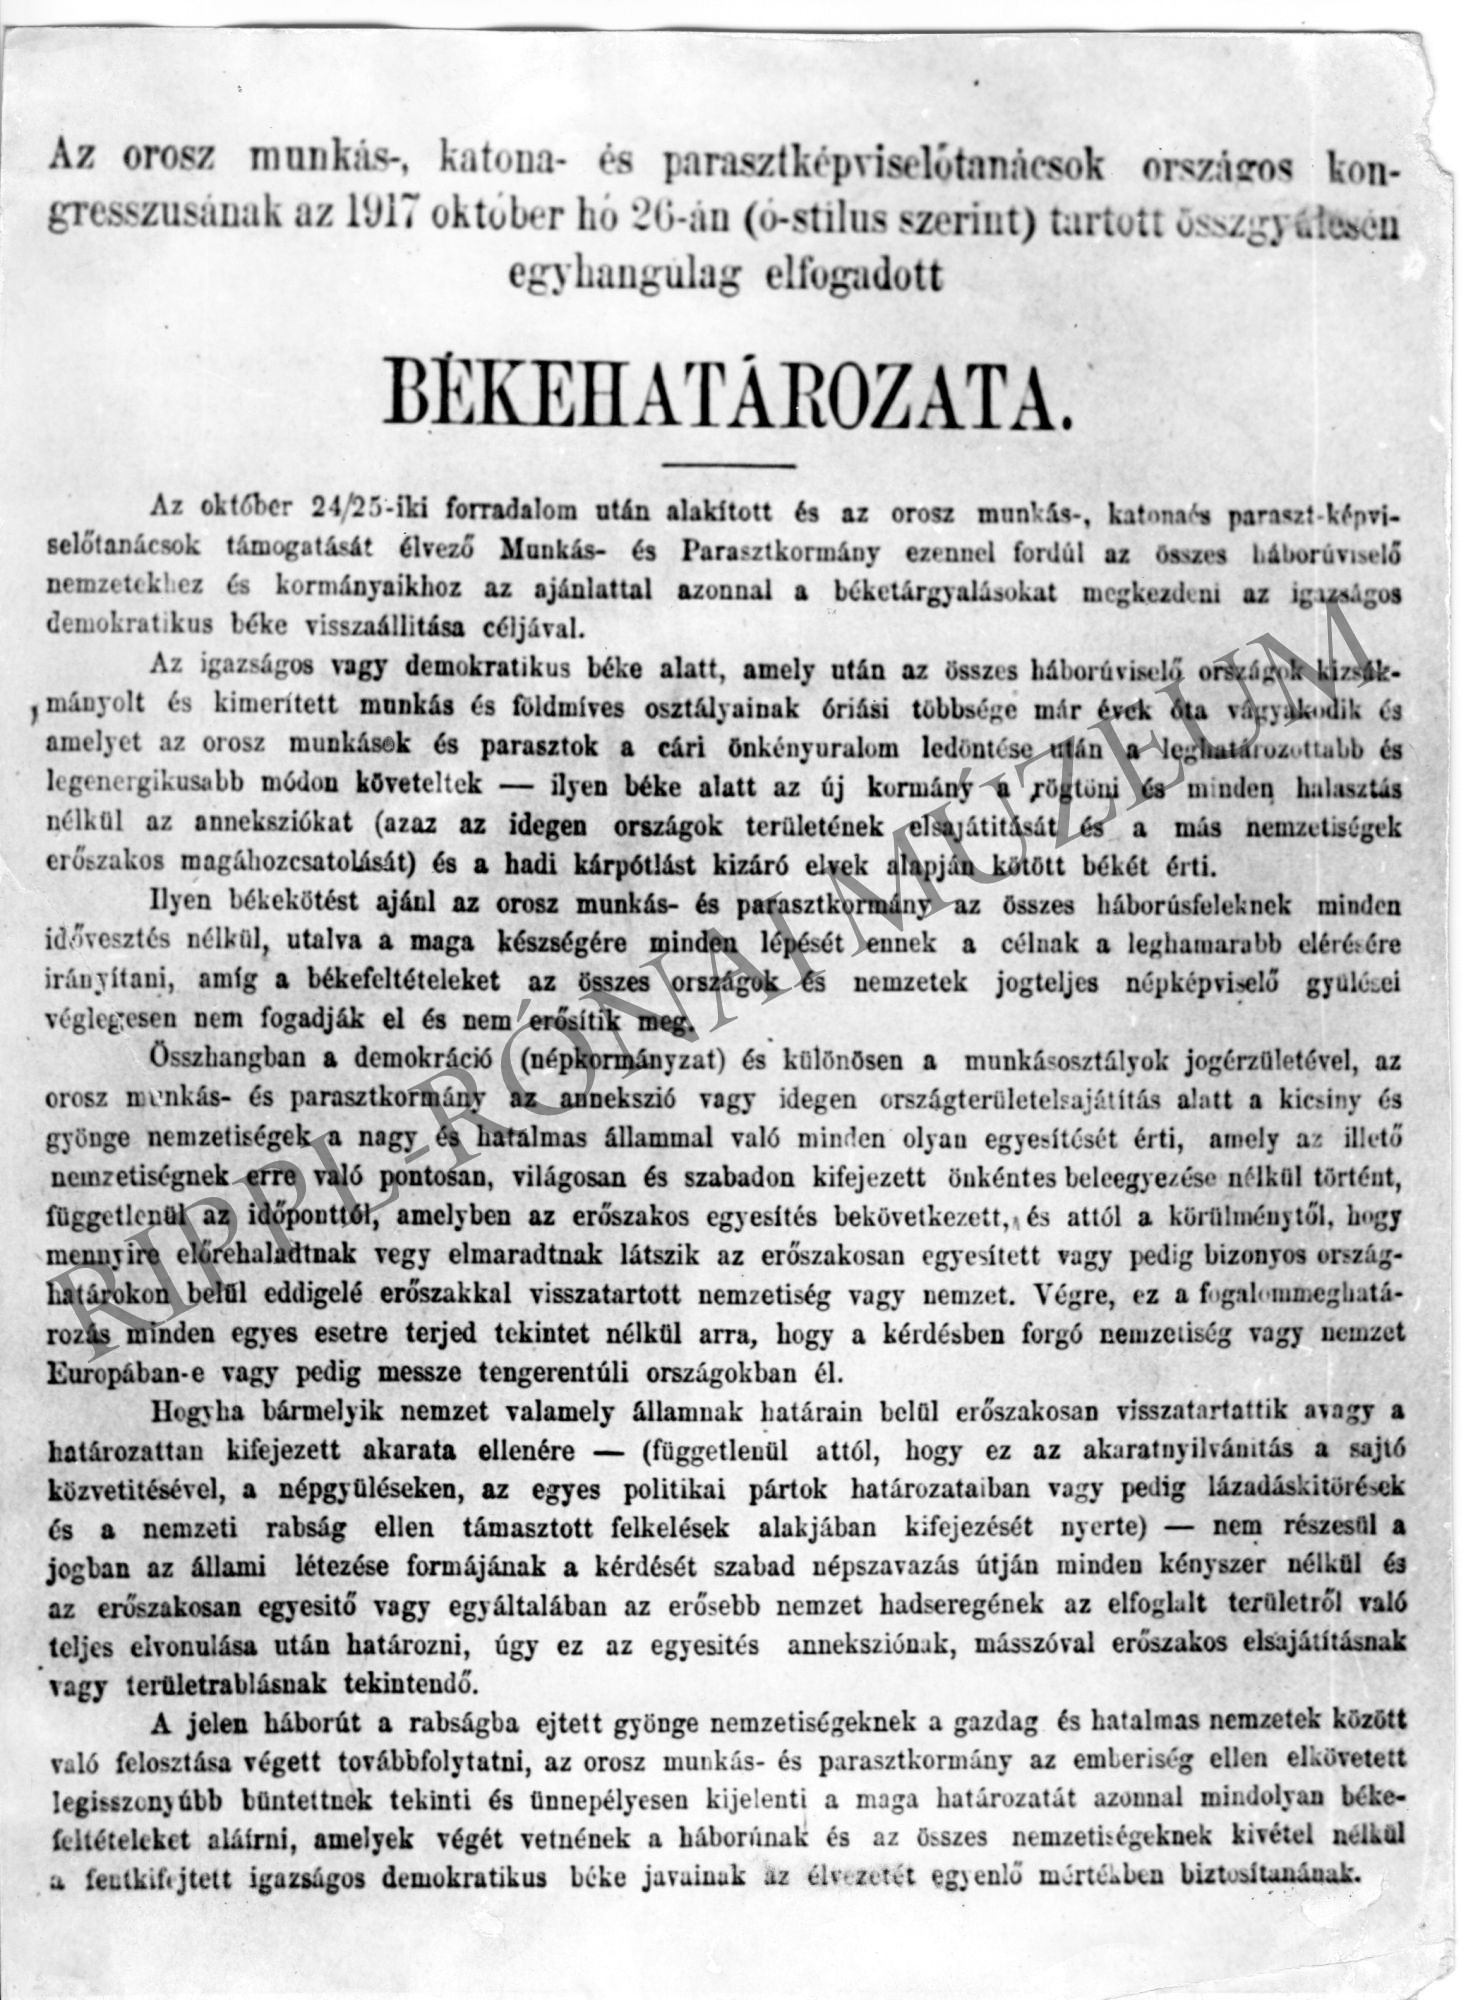 Az orosz munkás-, katona- és parasztképviselőtanácsok kongresszusának elfogadott békehatározata (1917. október 26.) (Rippl-Rónai Múzeum CC BY-NC-SA)